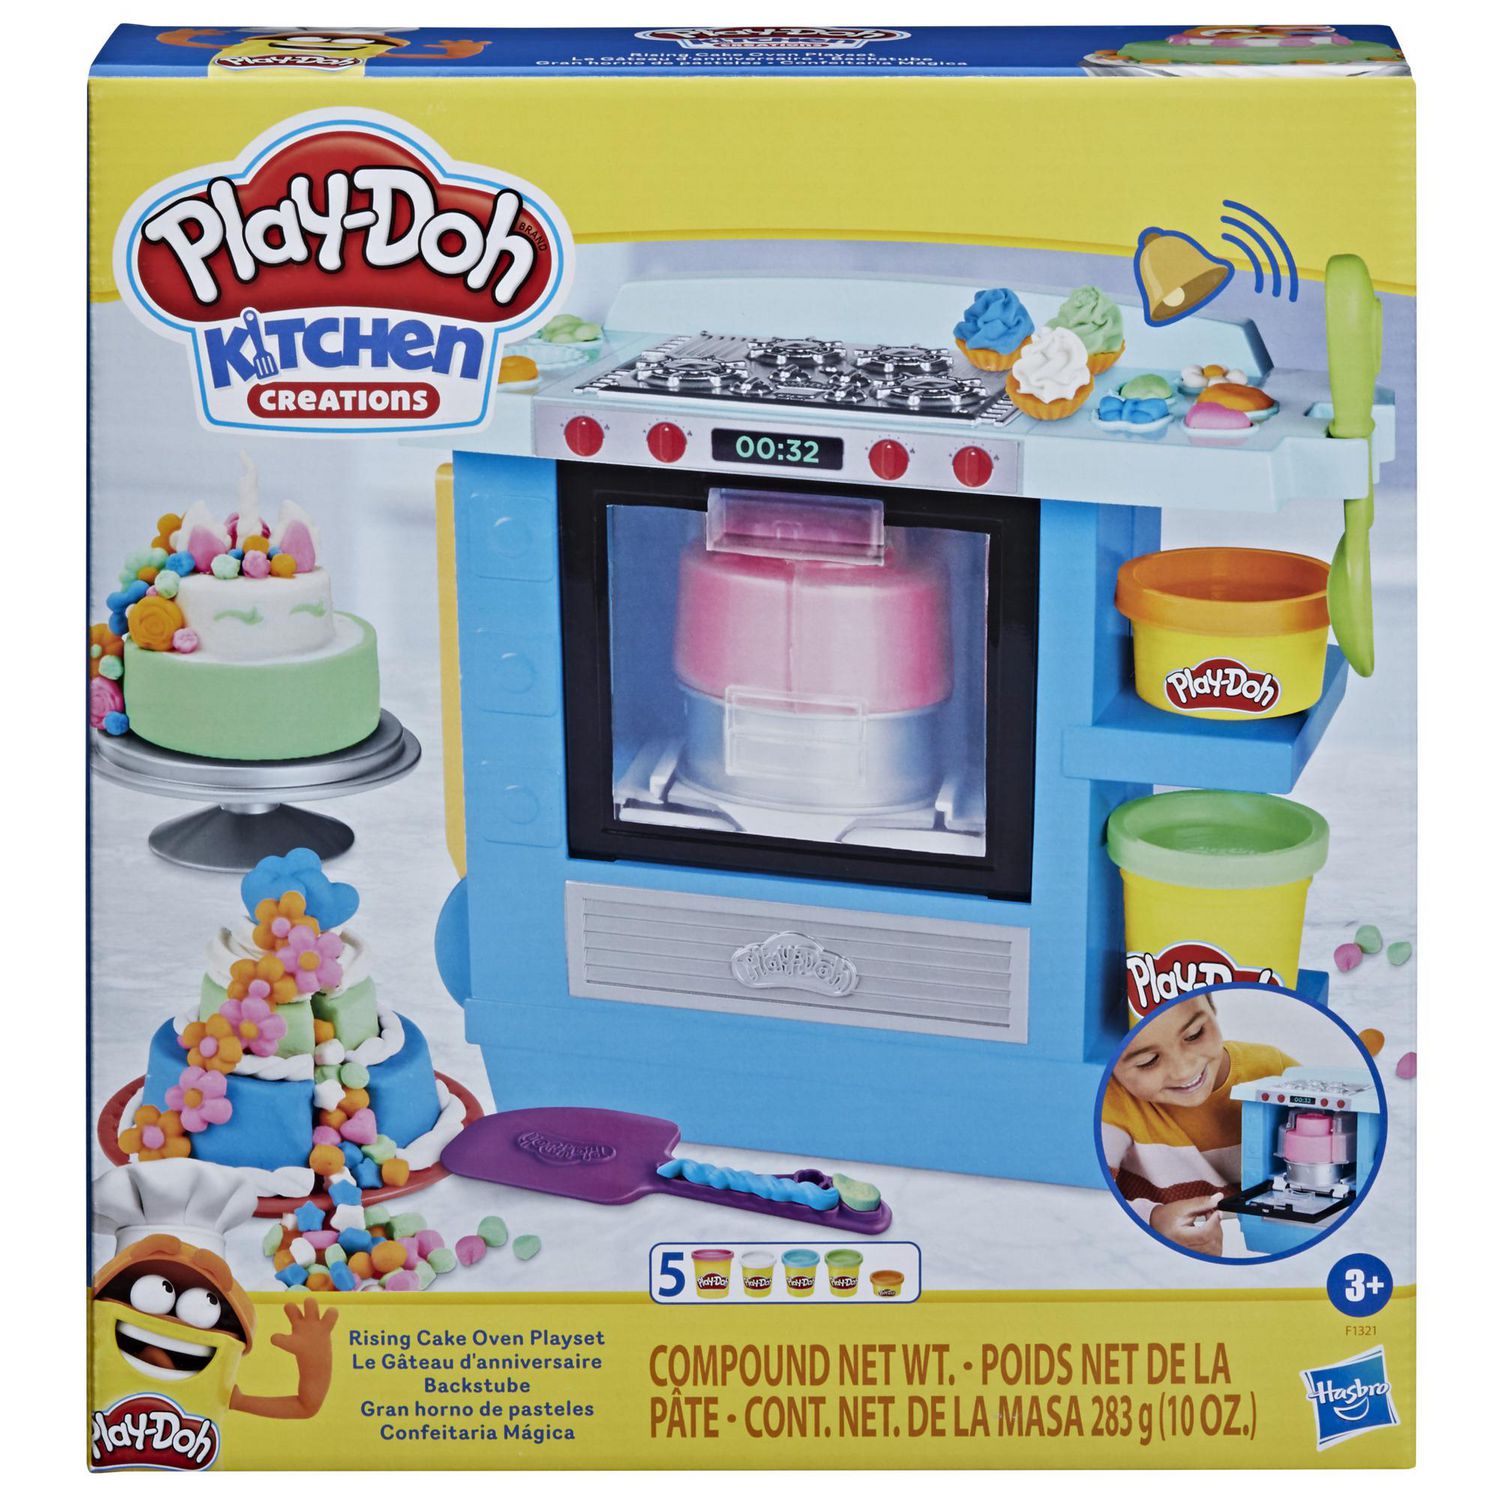 Jouer et créer avec Play-Doh : la pâte à modeler préférée